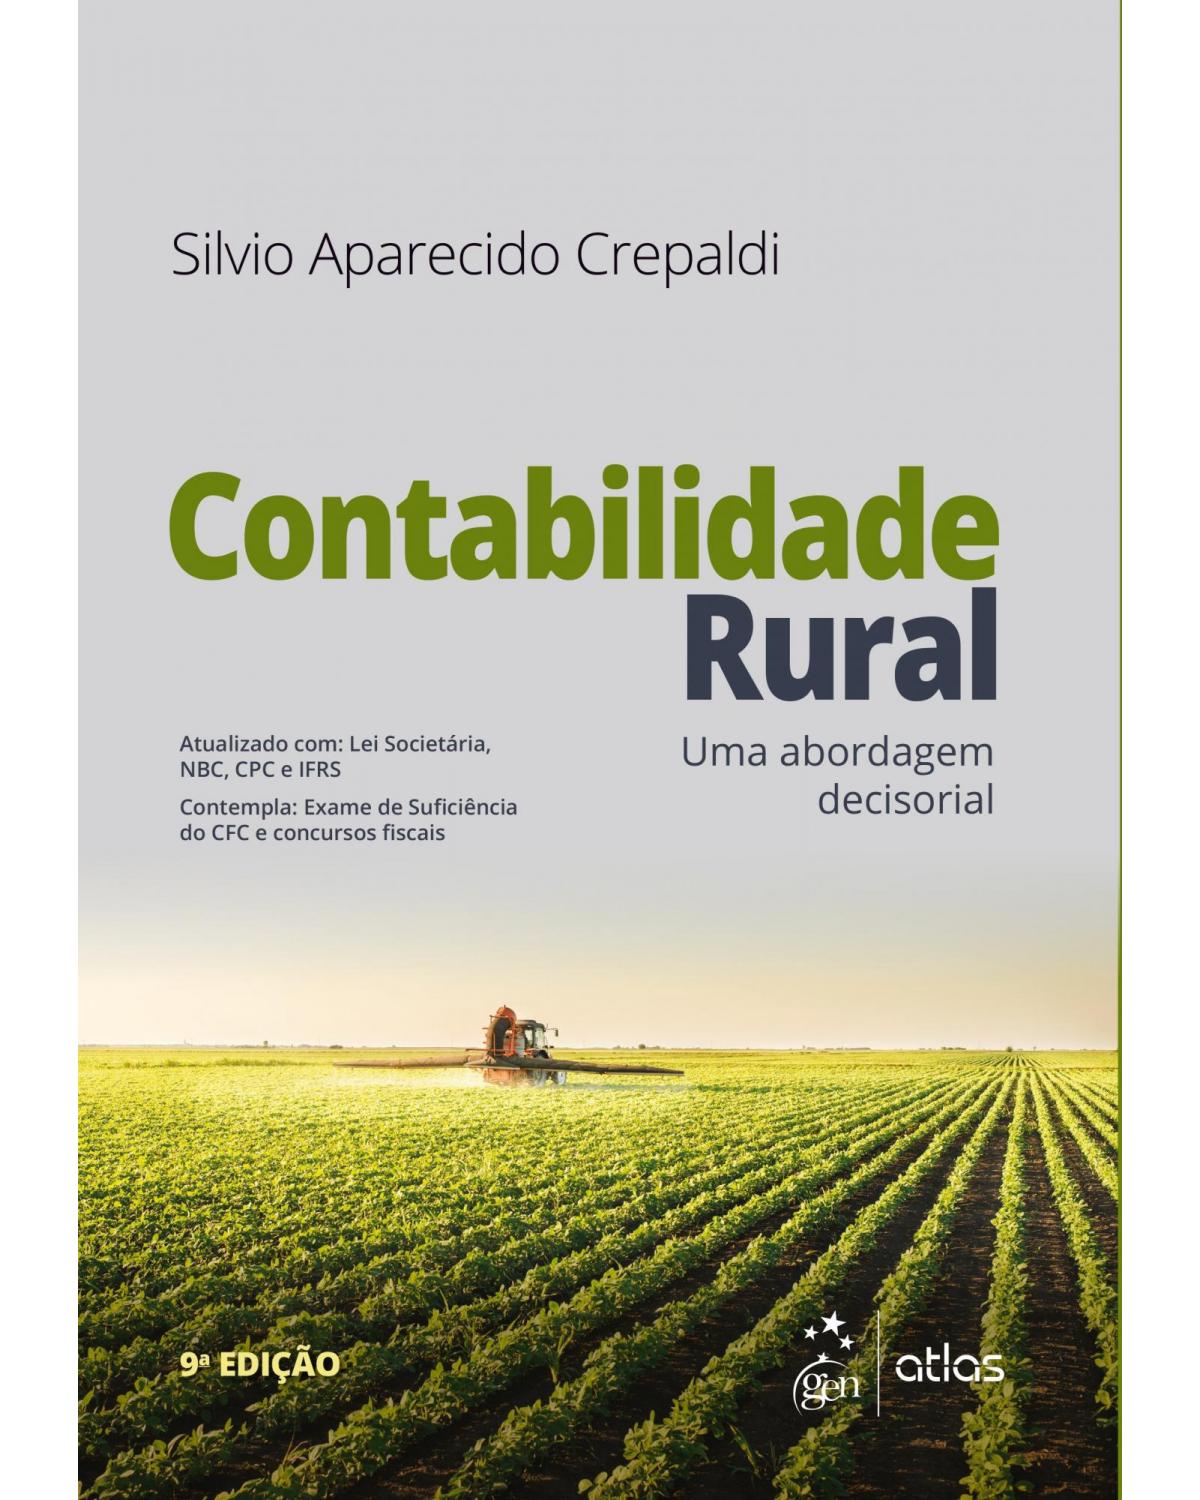 Contabilidade rural - 9ª Edição | 2019